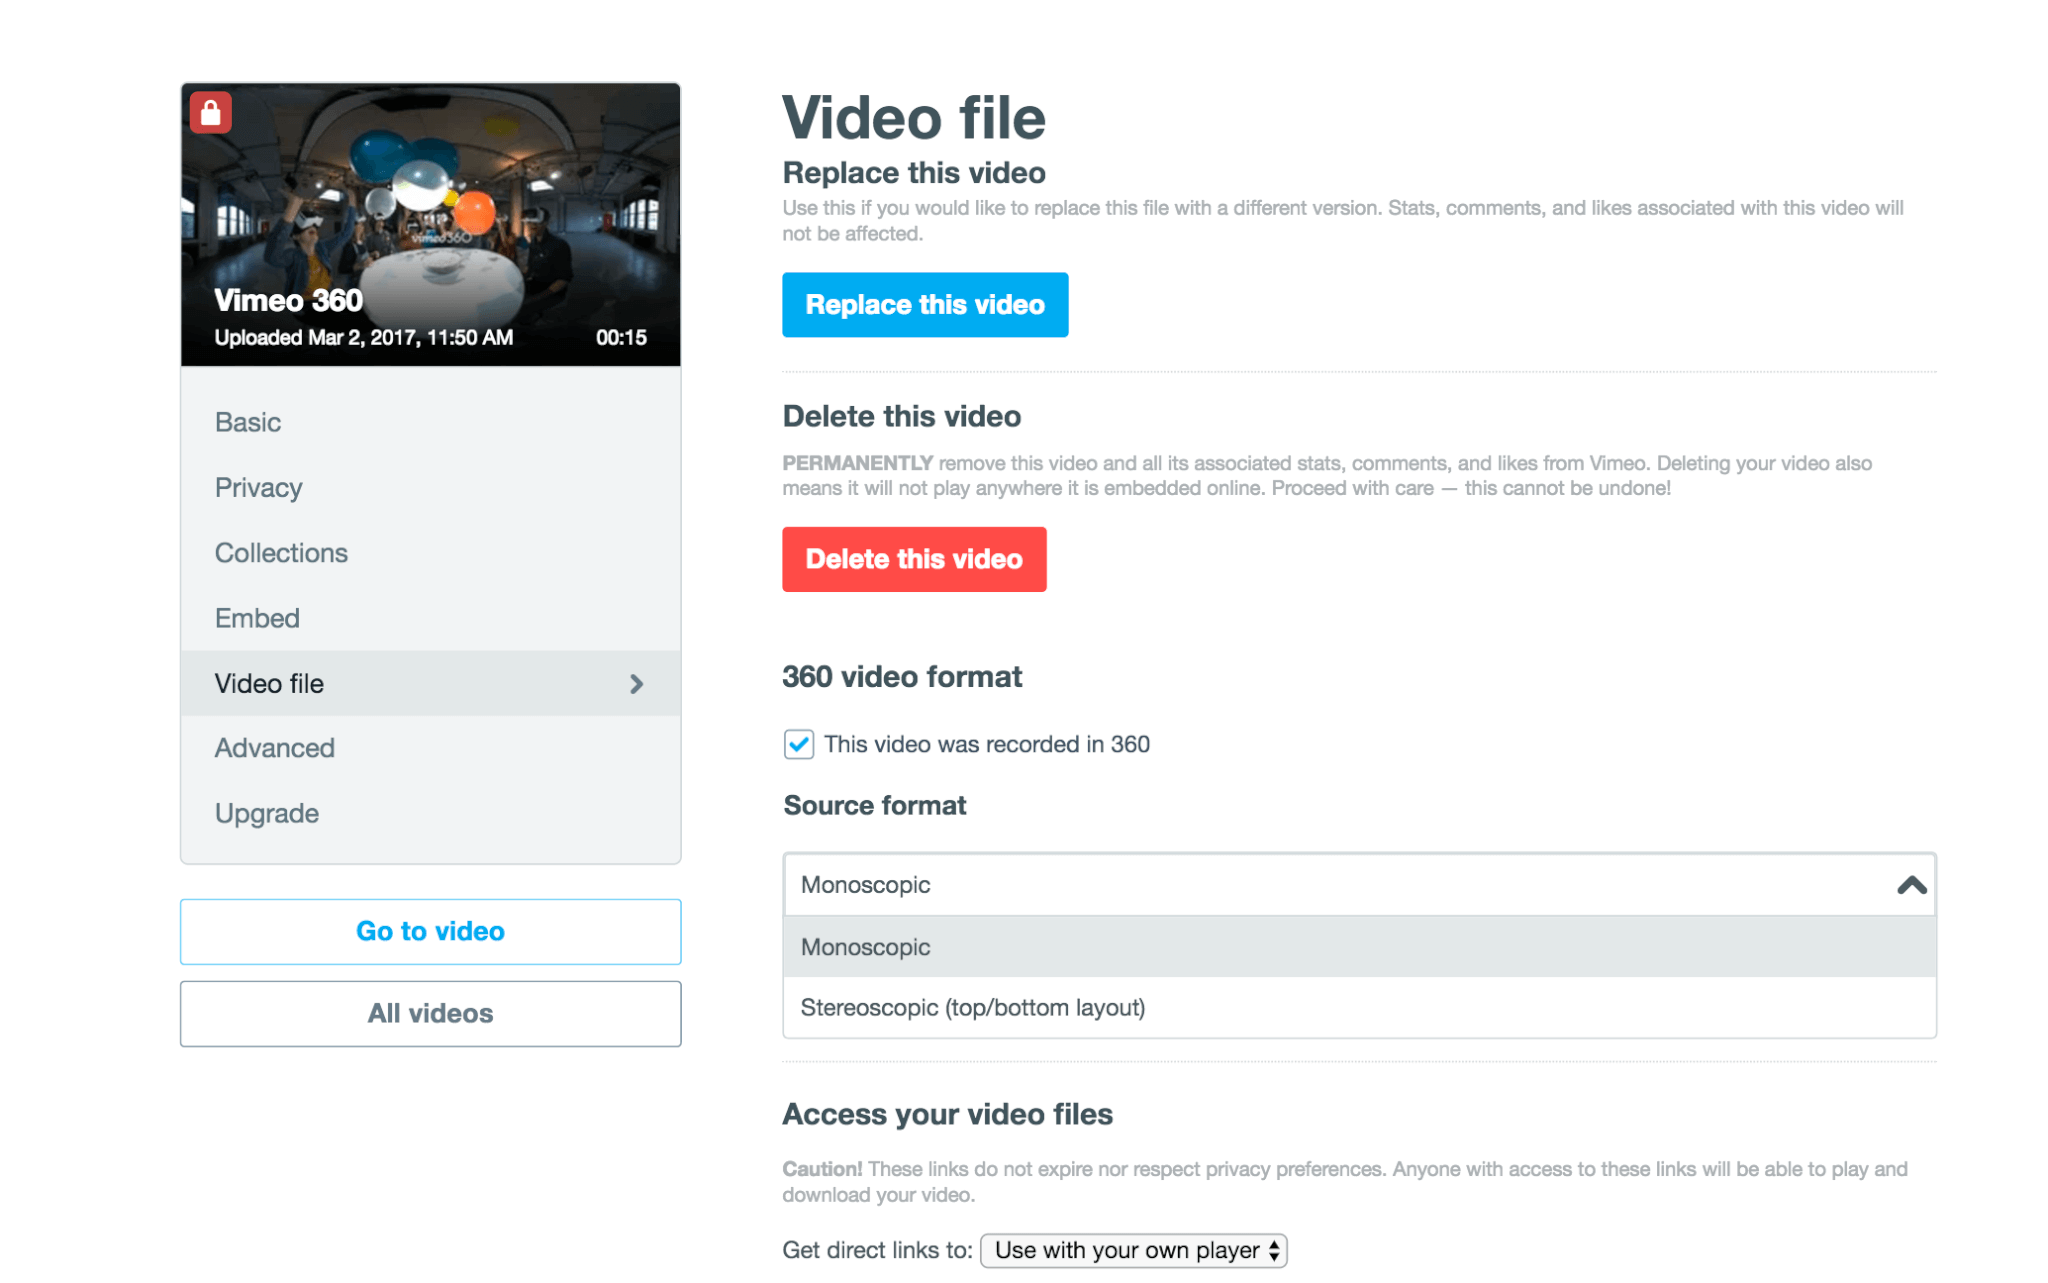 Agora é a vez do vimeo dar suporte a vídeos em 360°. O vimeo ainda oferece tutoriais e aulas gratuitas para quem quiser entender o processo de produção nesse formato